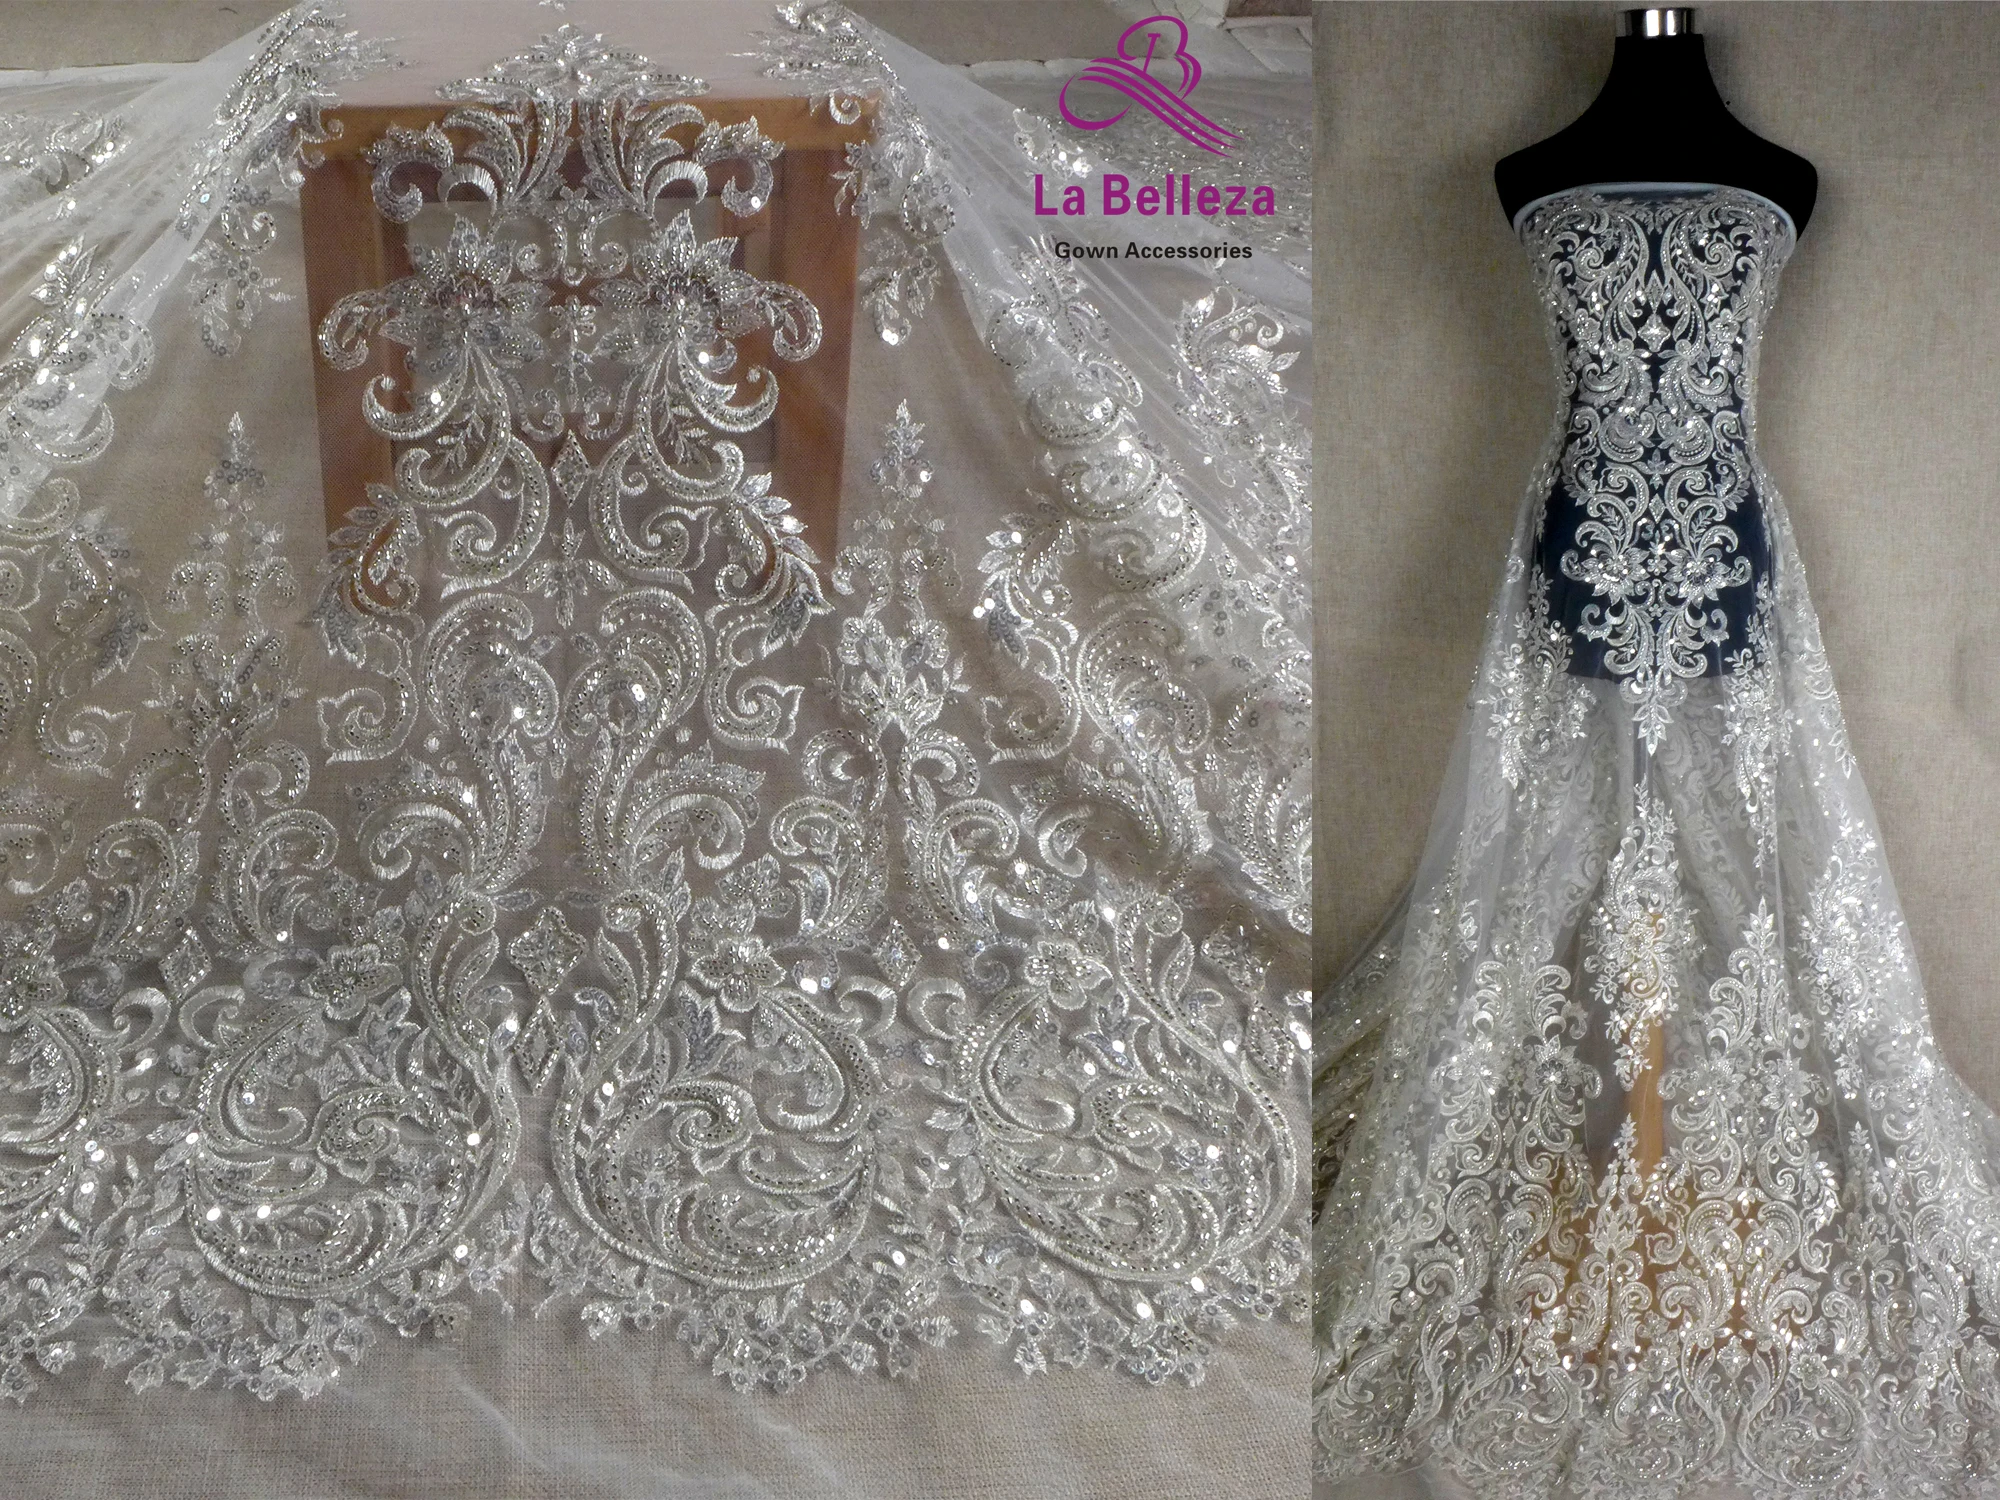 

La Belleza 2021 fashion bridal lace,Large patterns lace fabric,silver beading wedding dress lace fabric 51'' width 1 yard